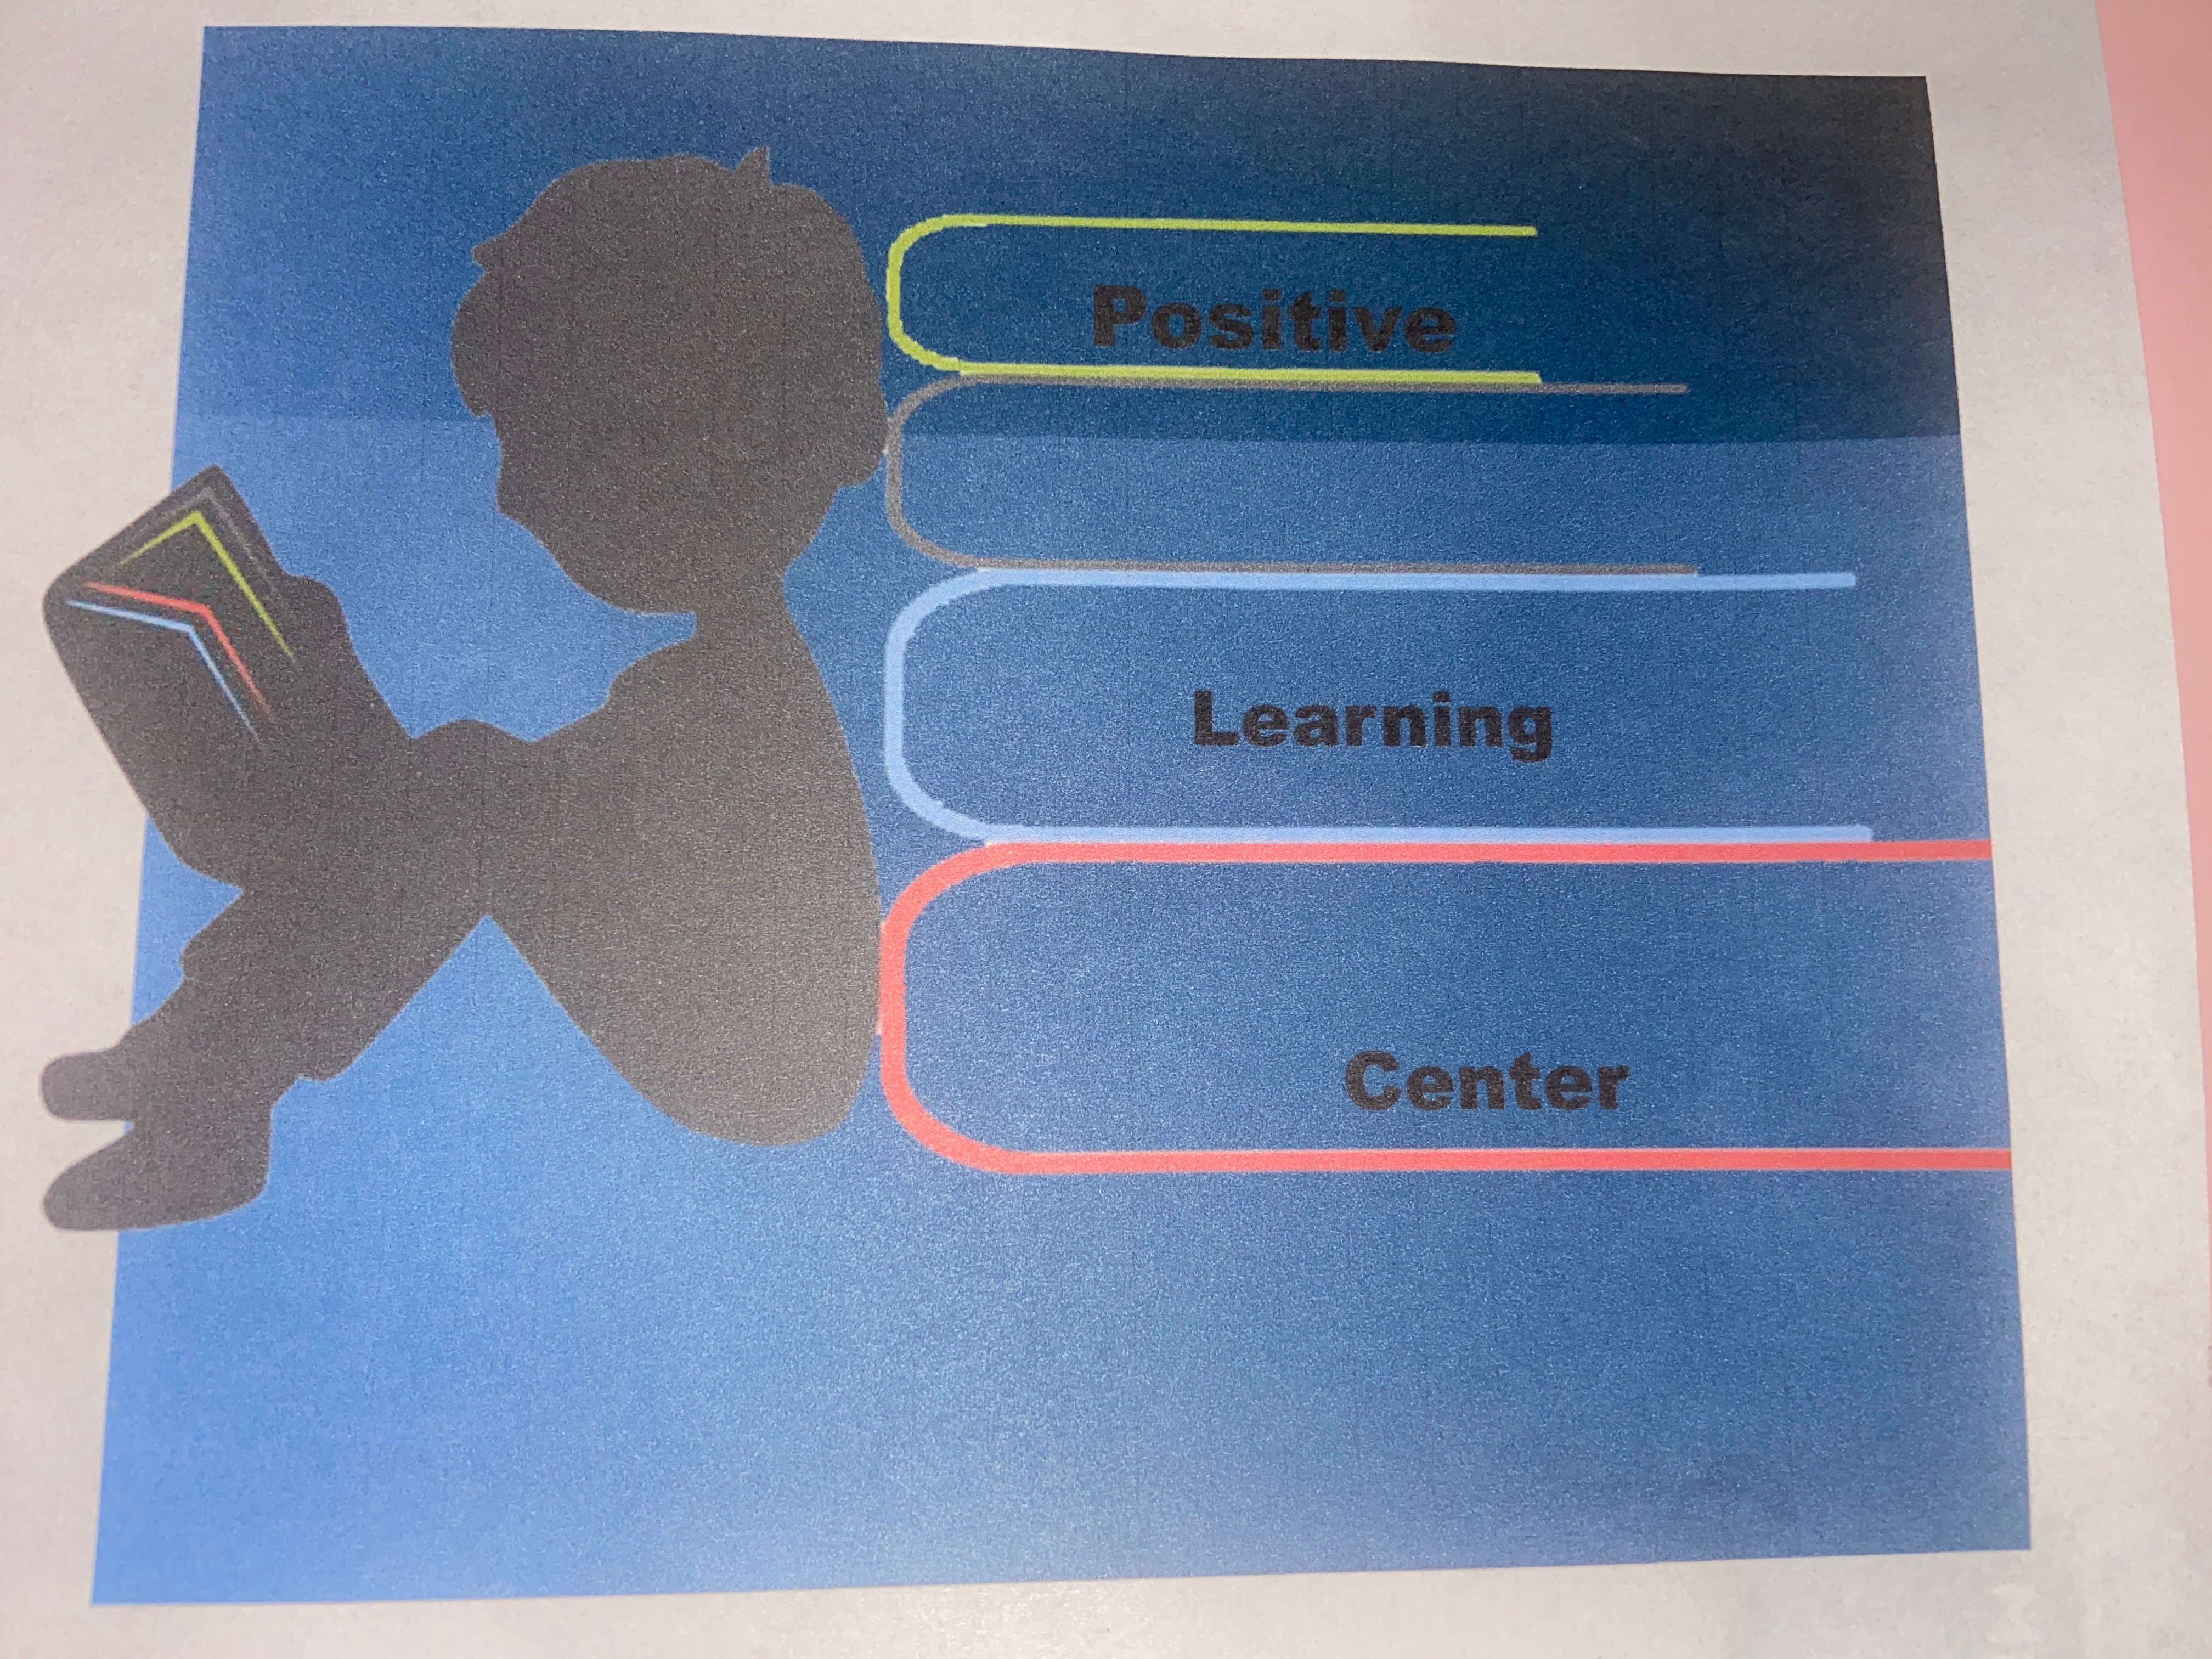 Positive Learning Center logo